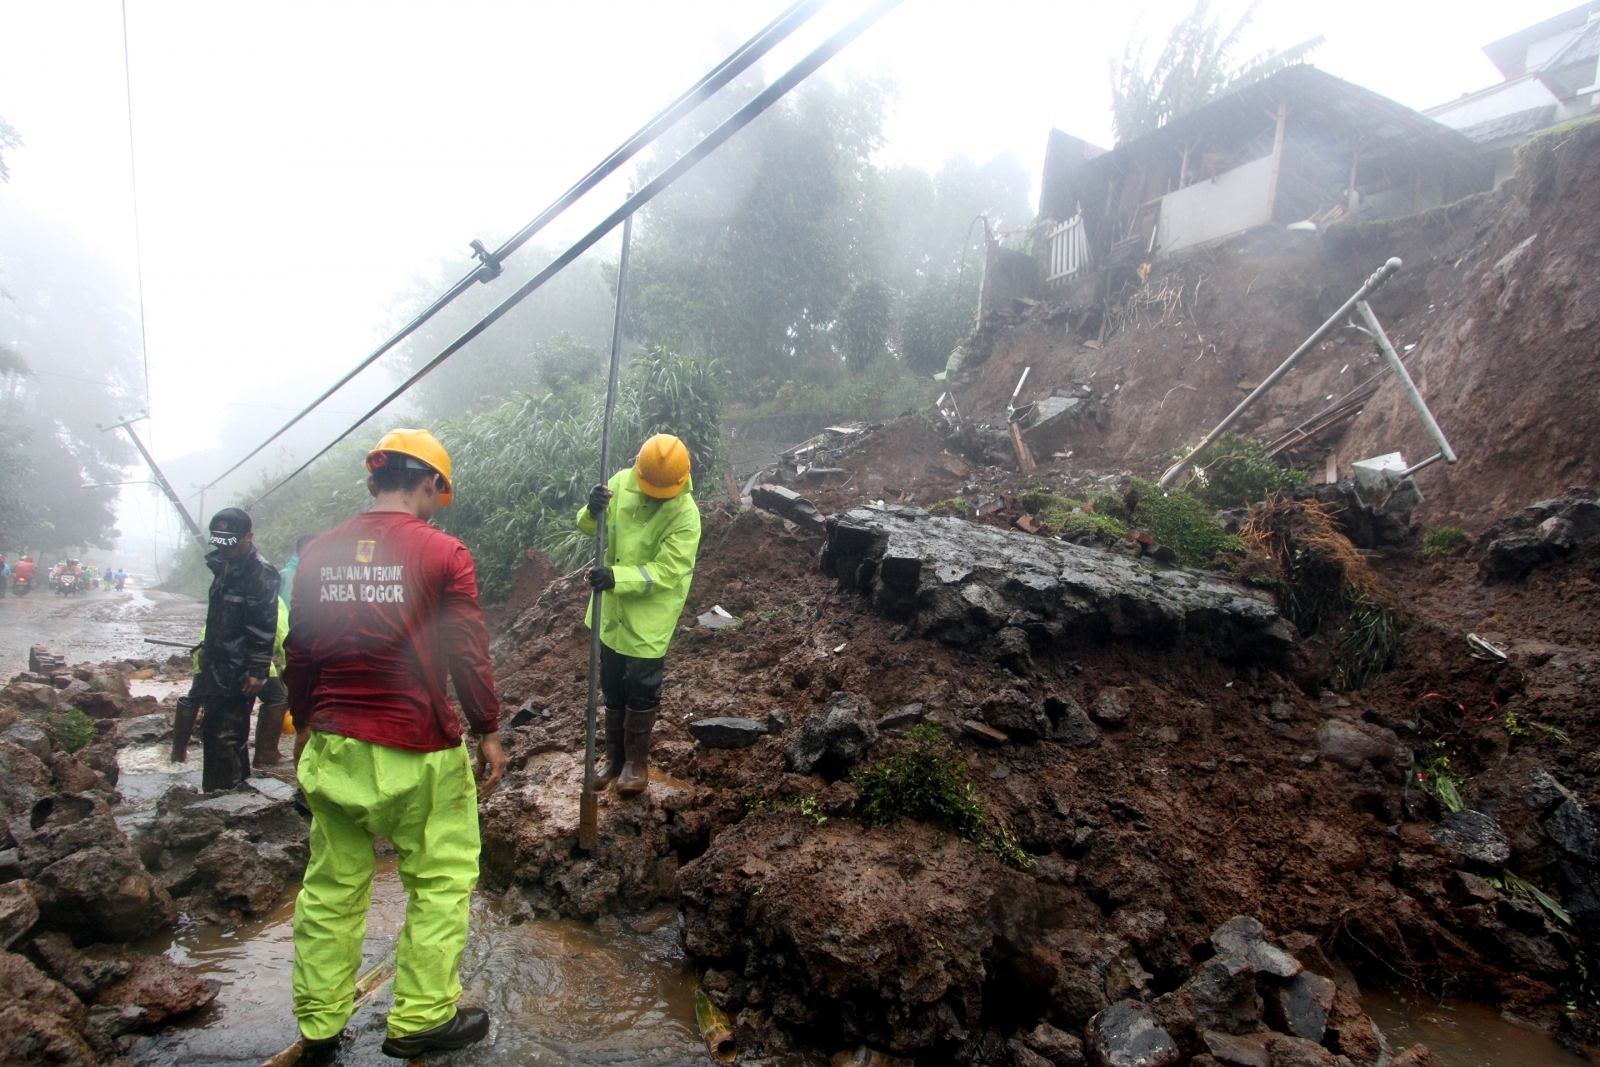 Indonesia floods landslides